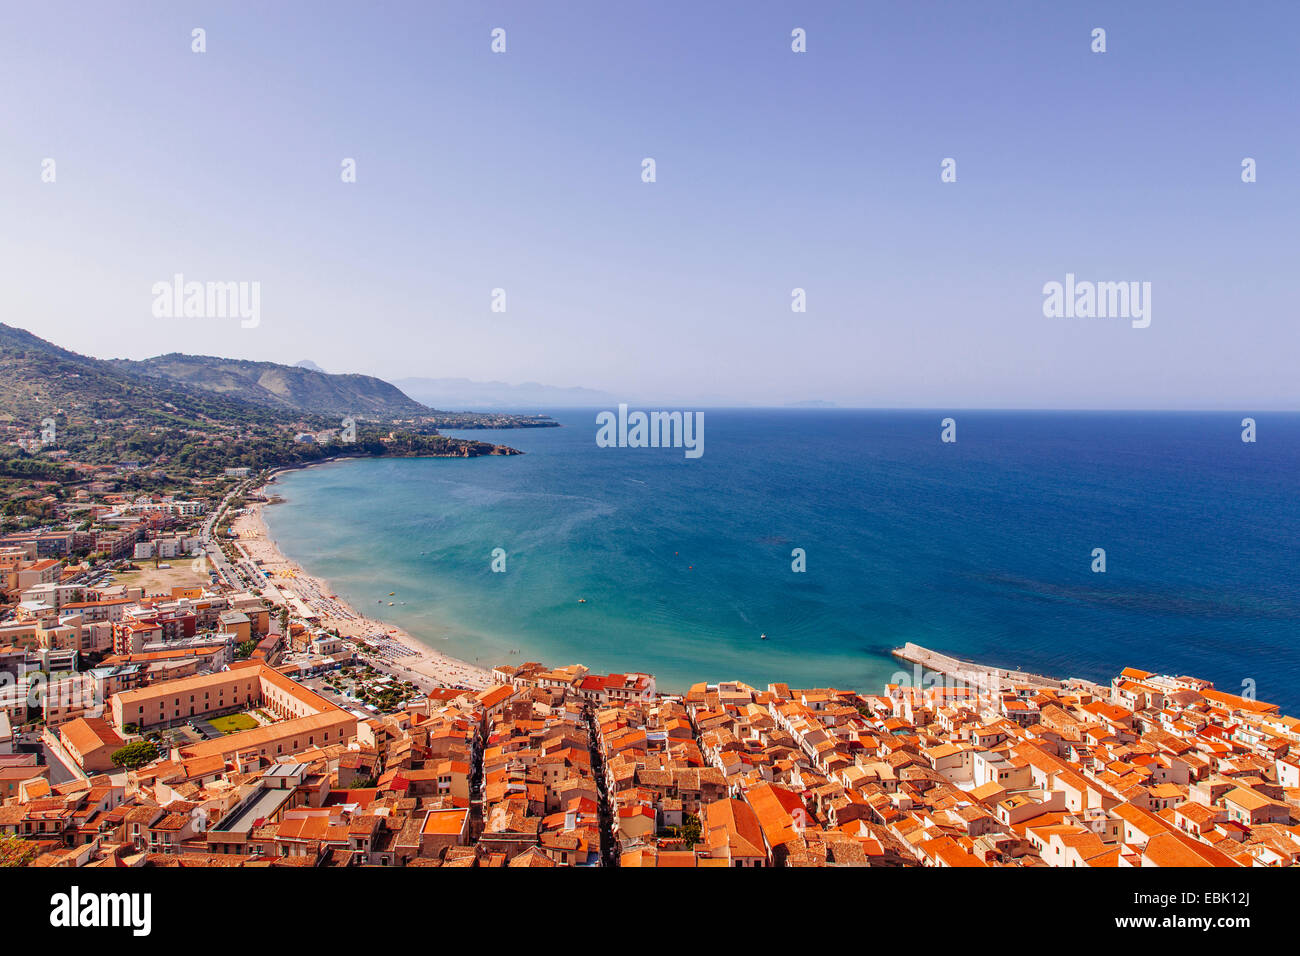 Vue du littoral et de la ville de Cefalù, Sicile, Italie Banque D'Images